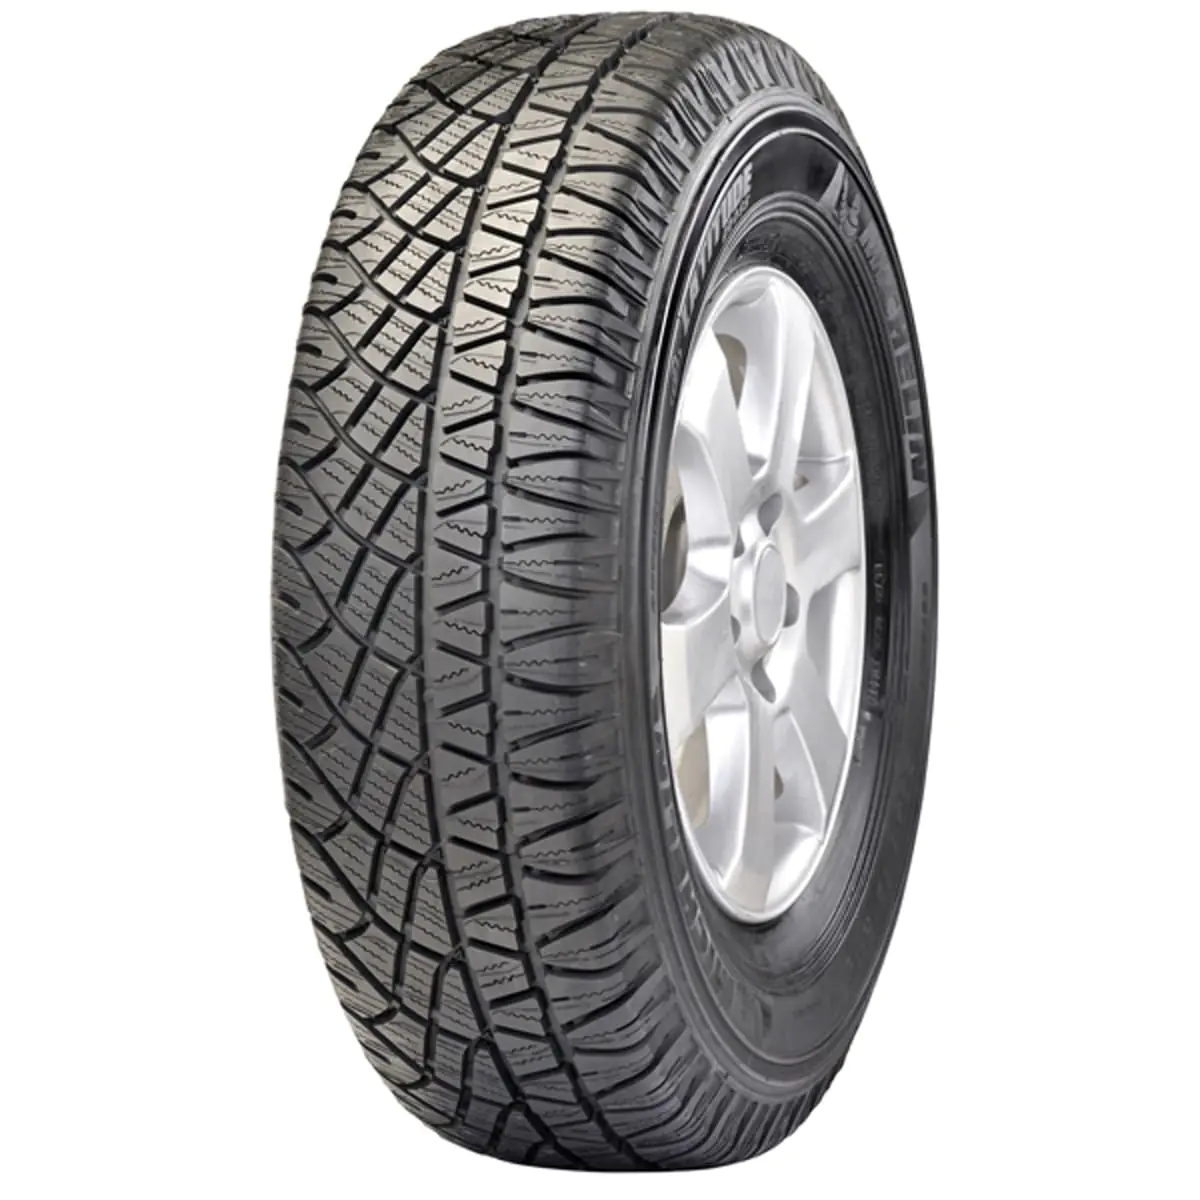 Michelin Michelin 235/55 R18 100H LATITUDE CROSS pneumatici nuovi Estivo 